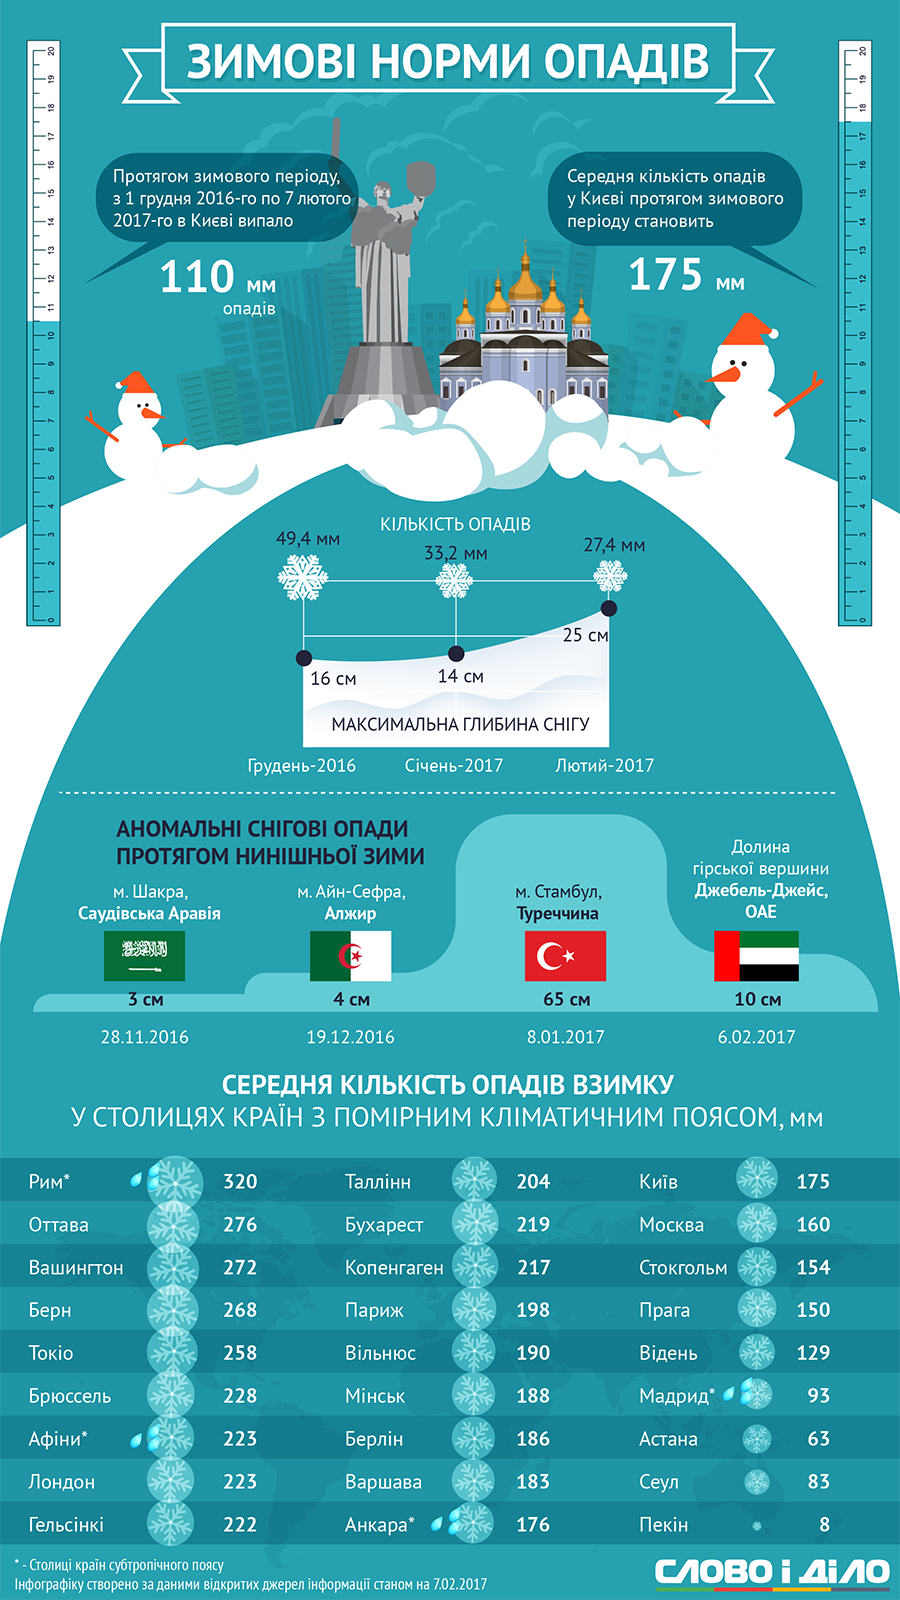 Минск на 15 месте по снегопадам среди мировых столиц